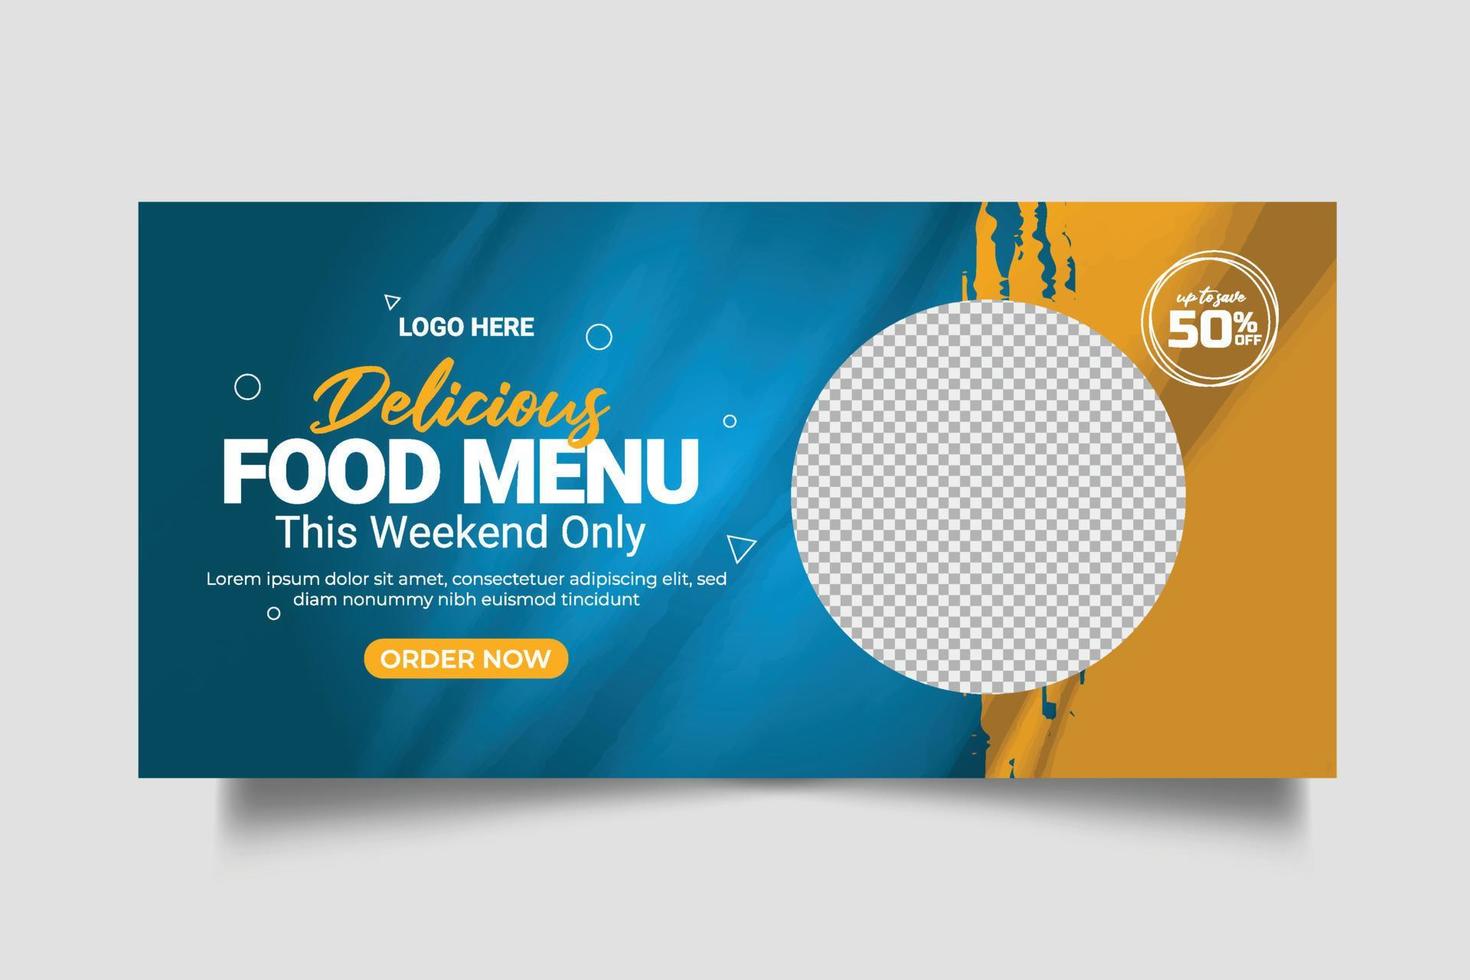 bannière web de menu alimentaire publication sur les médias sociaux avec modèle de promotion de bannière de couverture sociale de restaurant vecteur